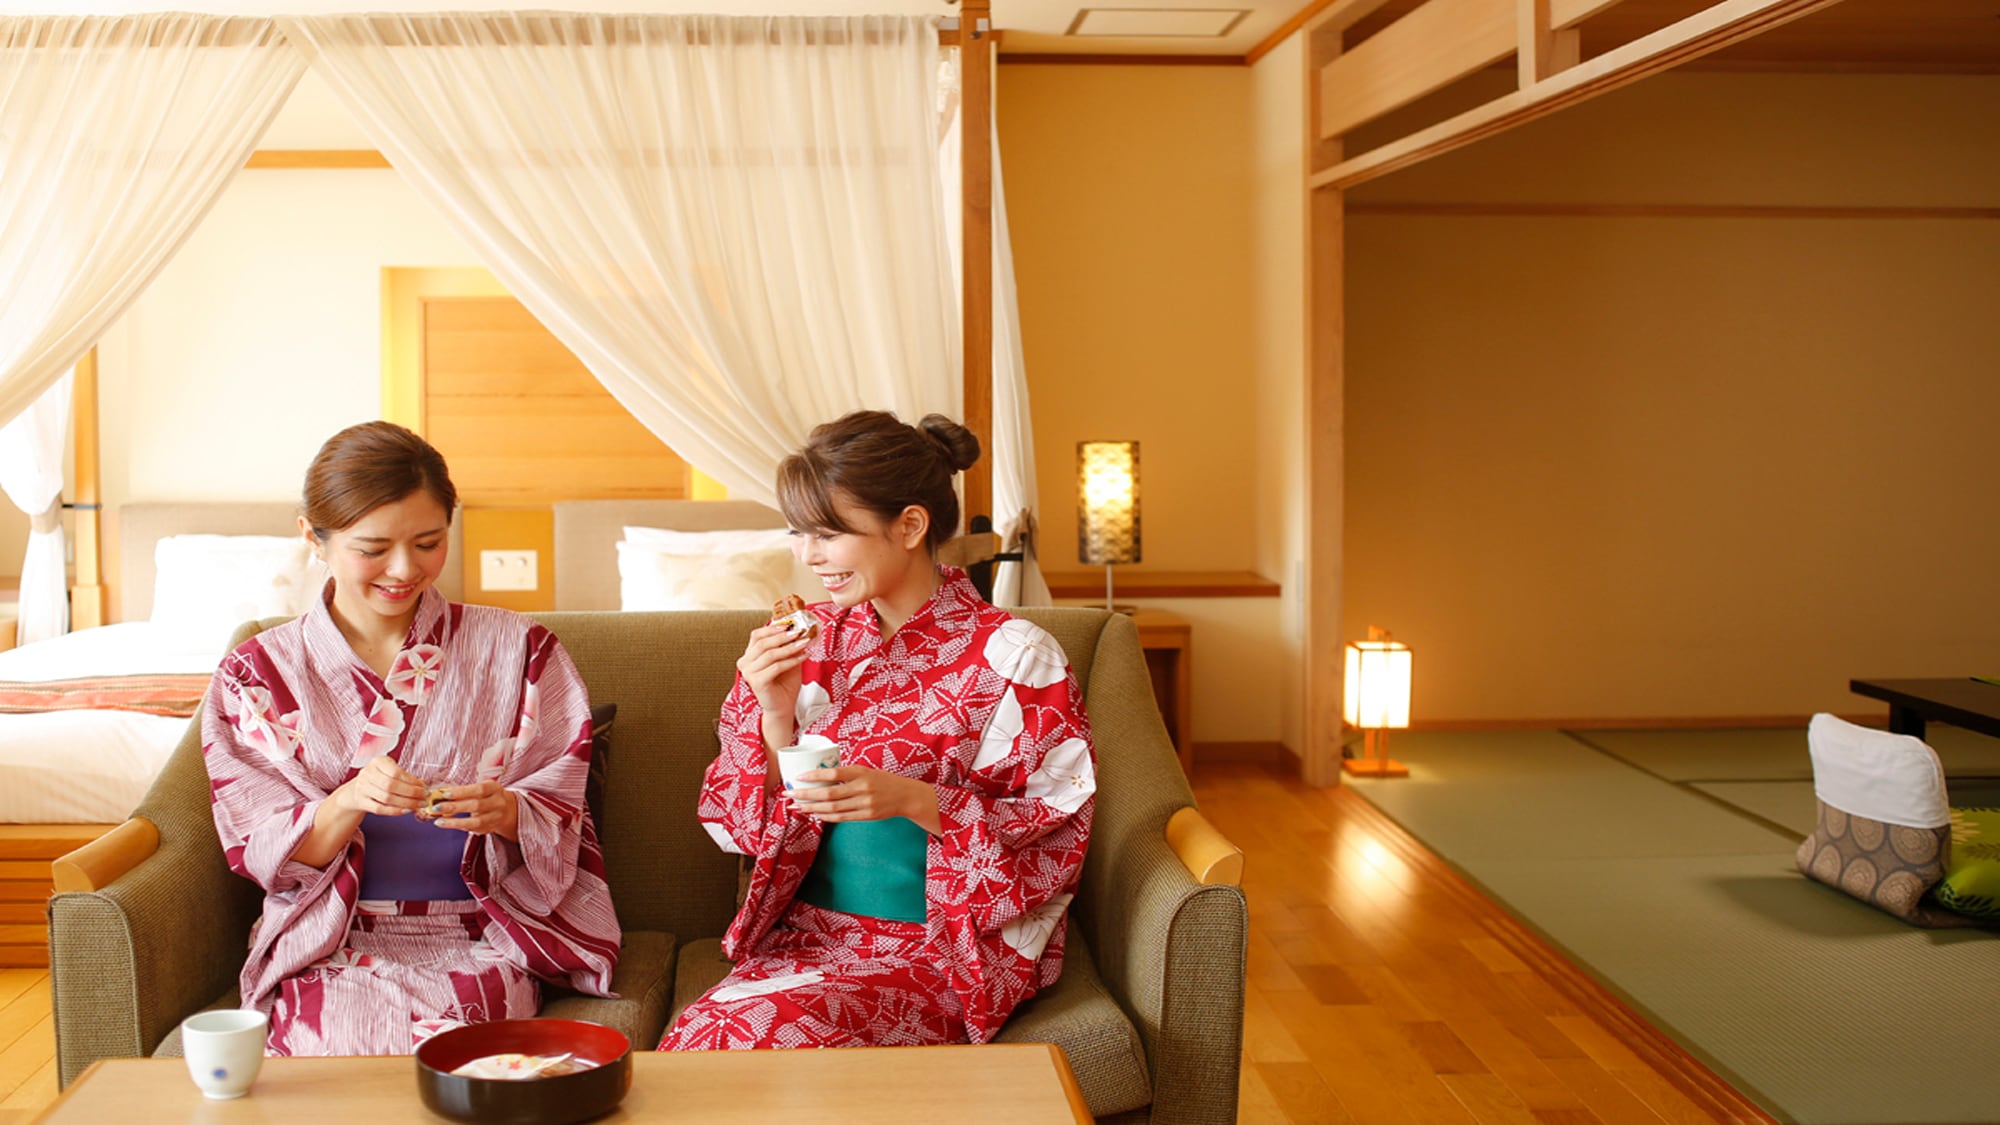 旅行和聊天的回憶也很活躍♪房間裡準備了松山名產。